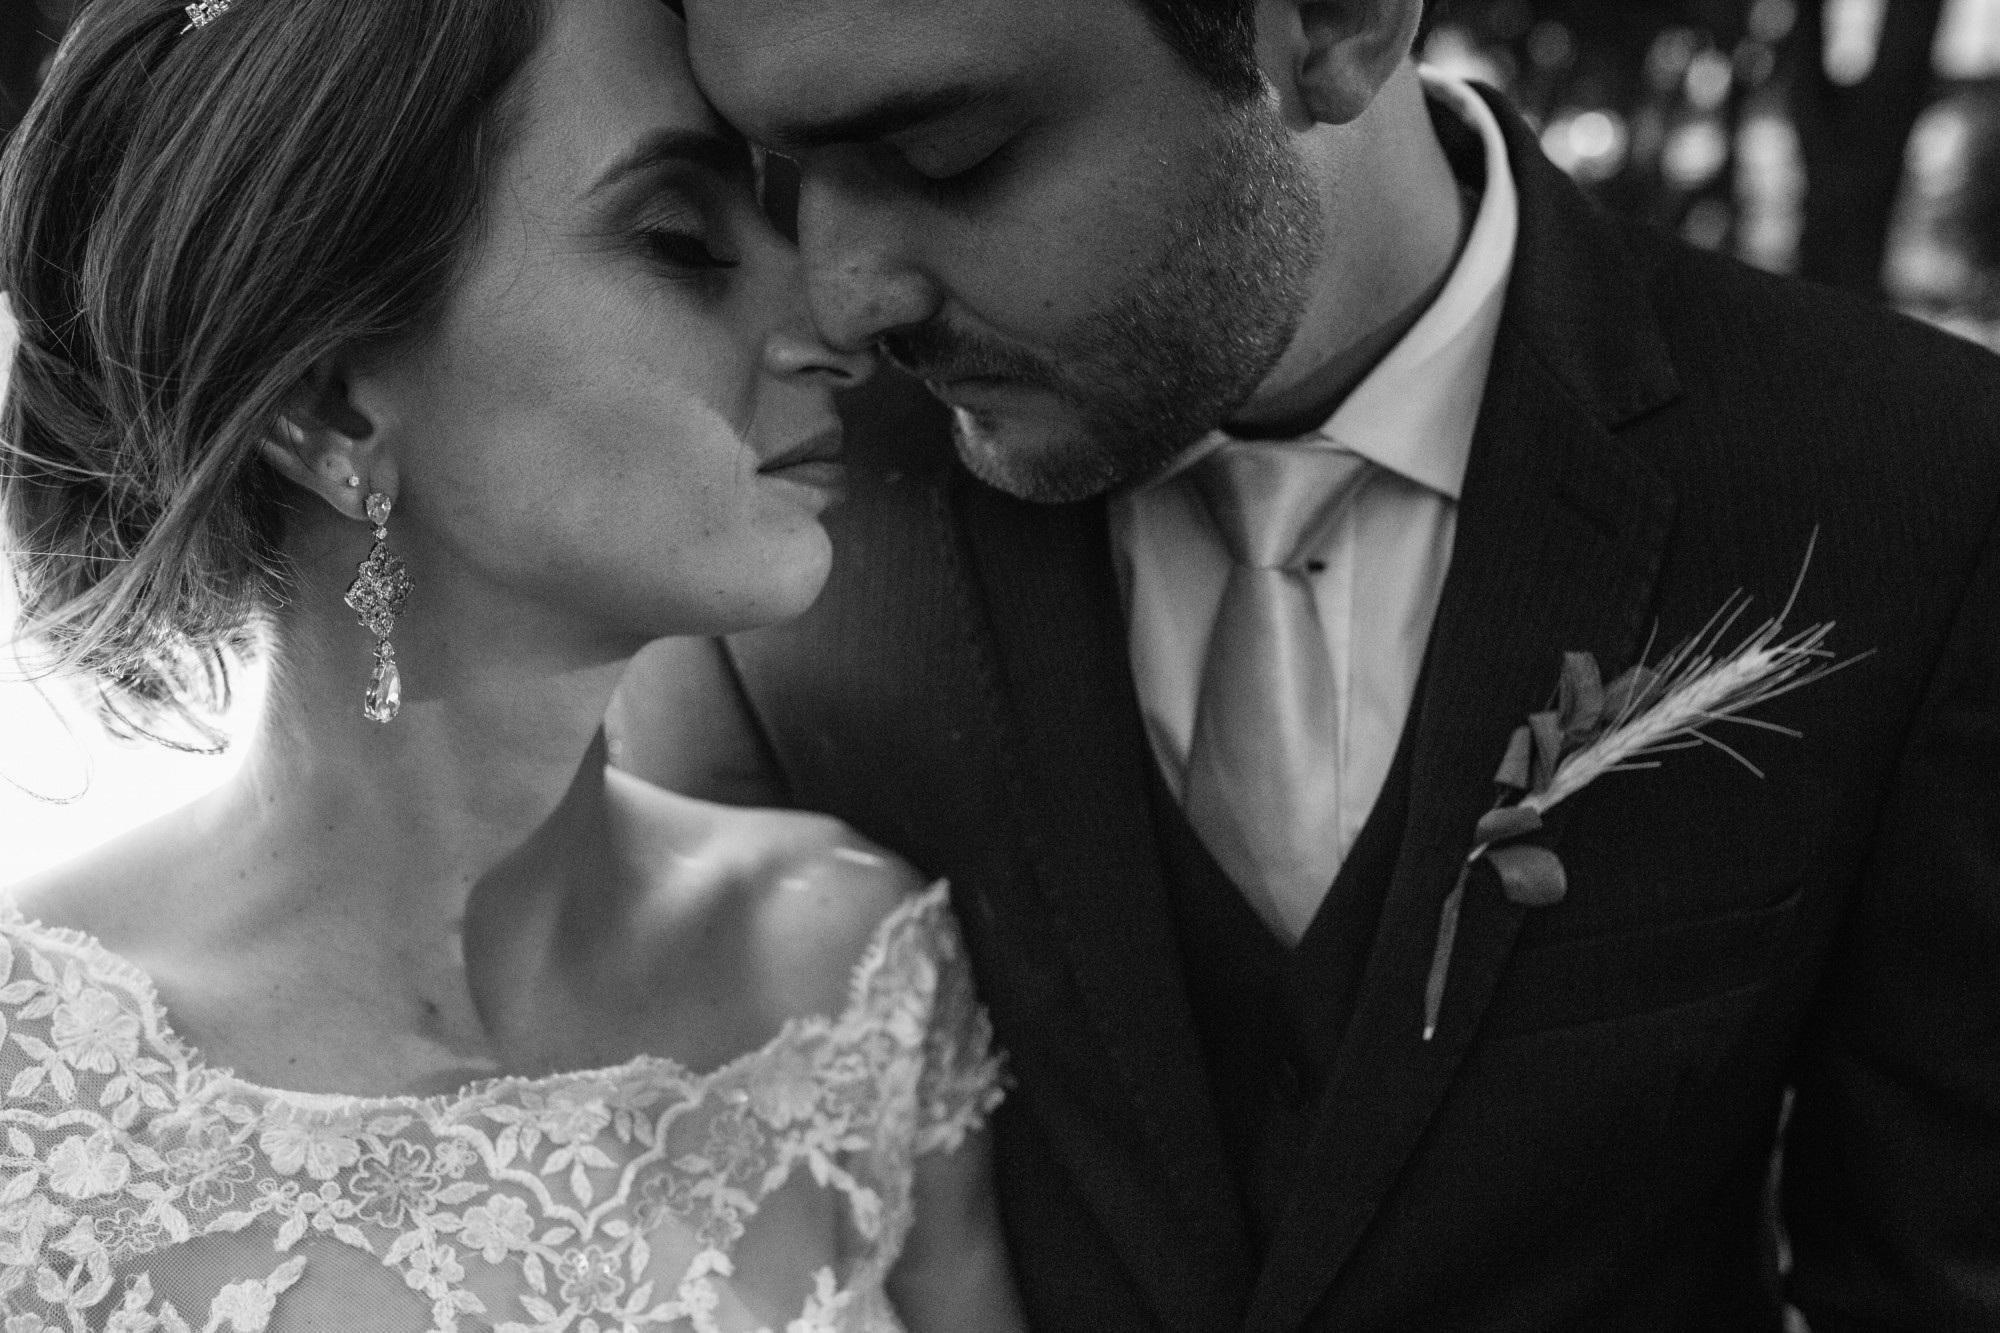 Camila e Guilherme Braga - Casamento em Maringa - PR por Lorran Souza e Léia Sotile - fotografo de casamentos00020